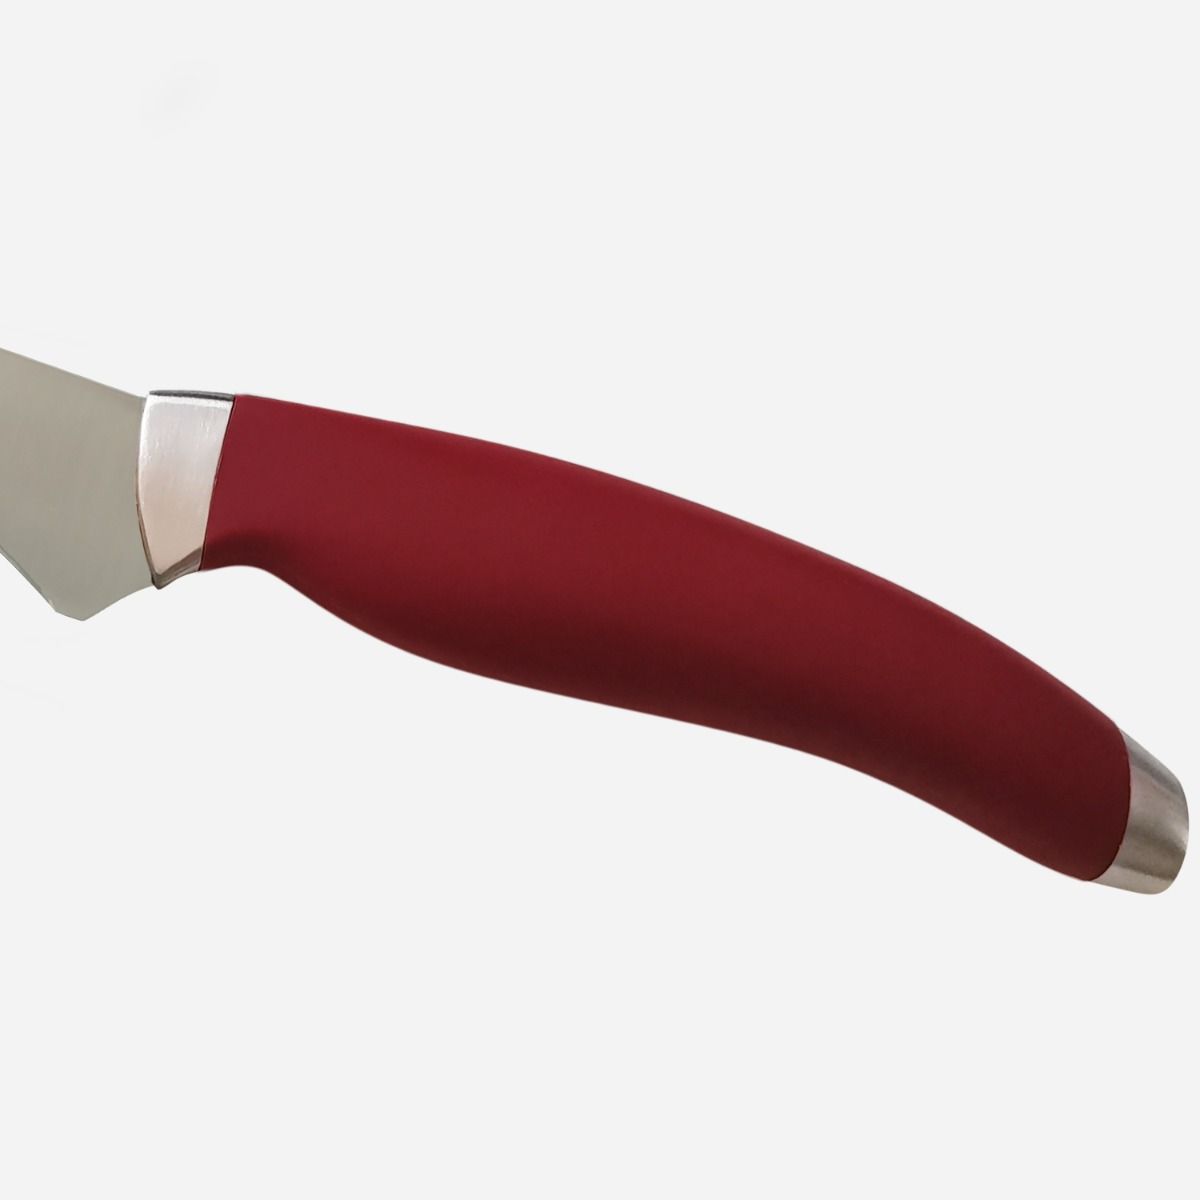 Fillet Knife 24 cm  Stainless Steel Berkel Teknica Handle Red Resin